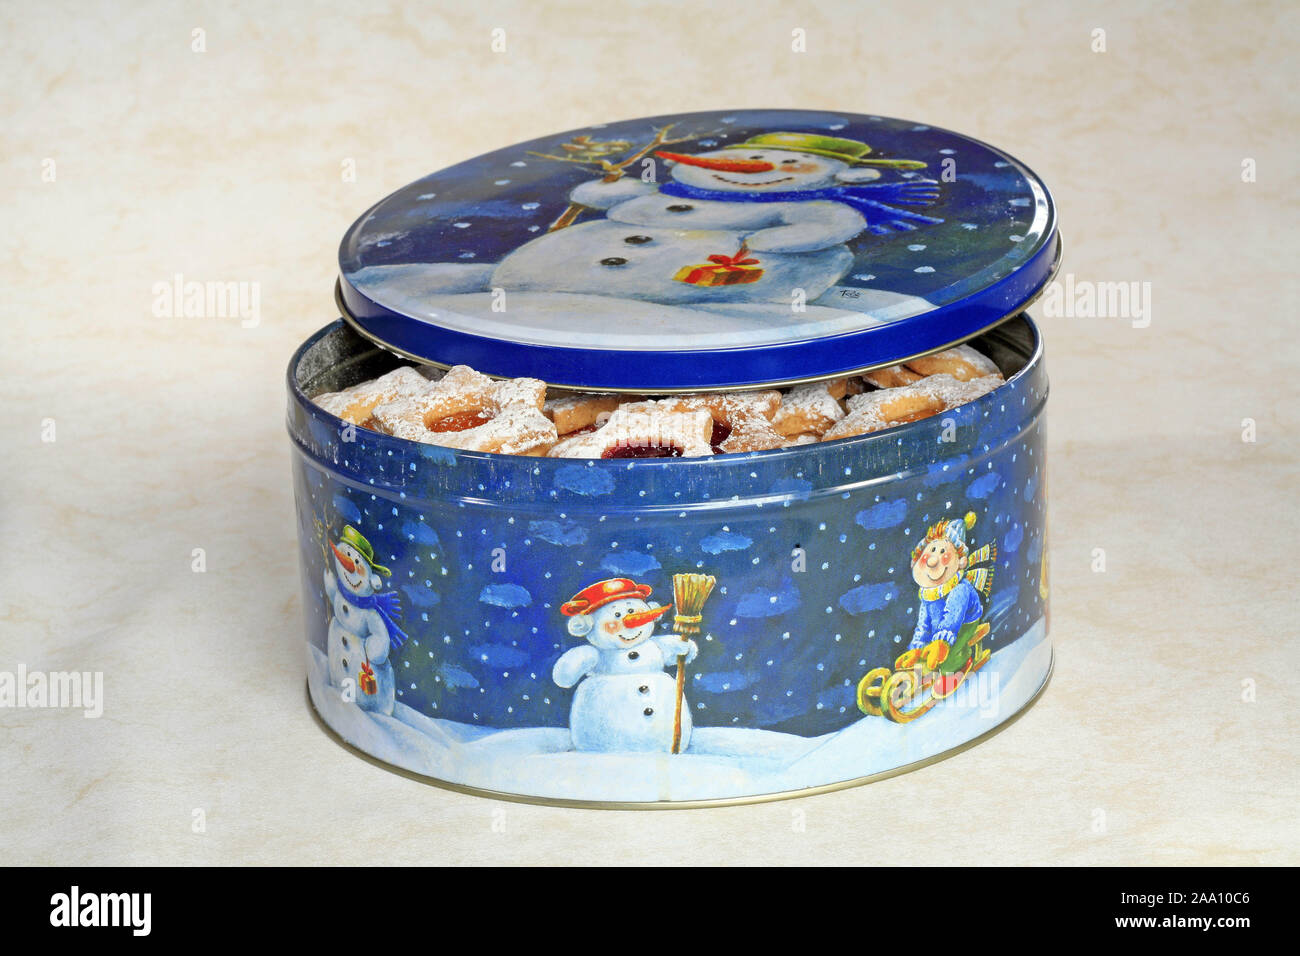 Halb geöffnete Keksdose mit Weihnachtsplätzchen / Half opened cokkie box  with chrismas cookies Stock Photo - Alamy